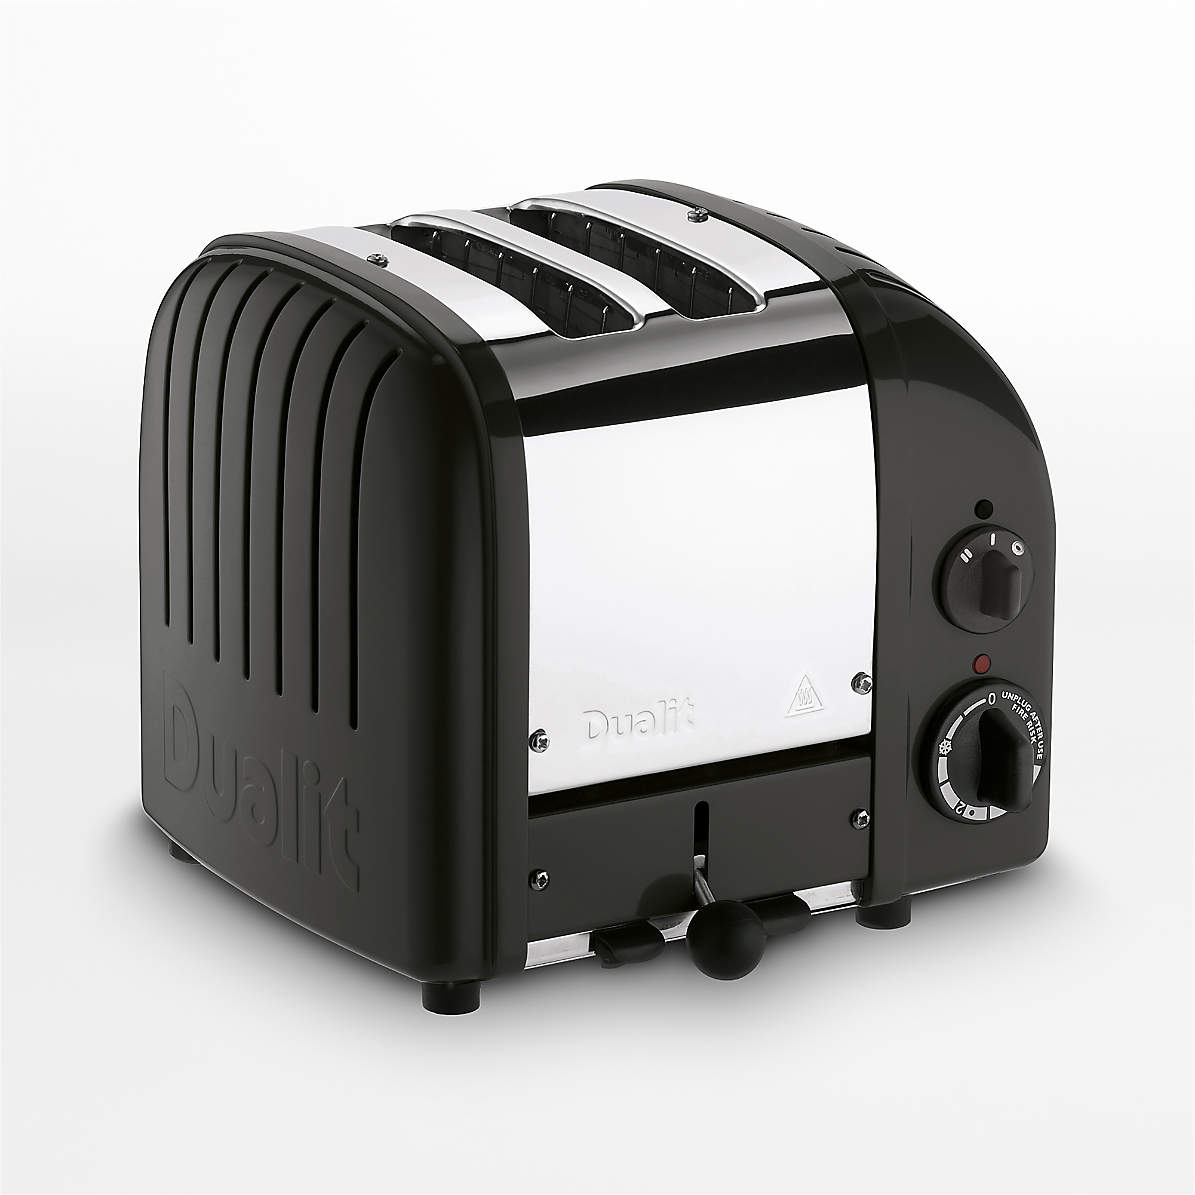 Behoefte aan Van streek Absorberen Dualit NewGen Matte Black 2-Slice Toaster | Crate & Barrel